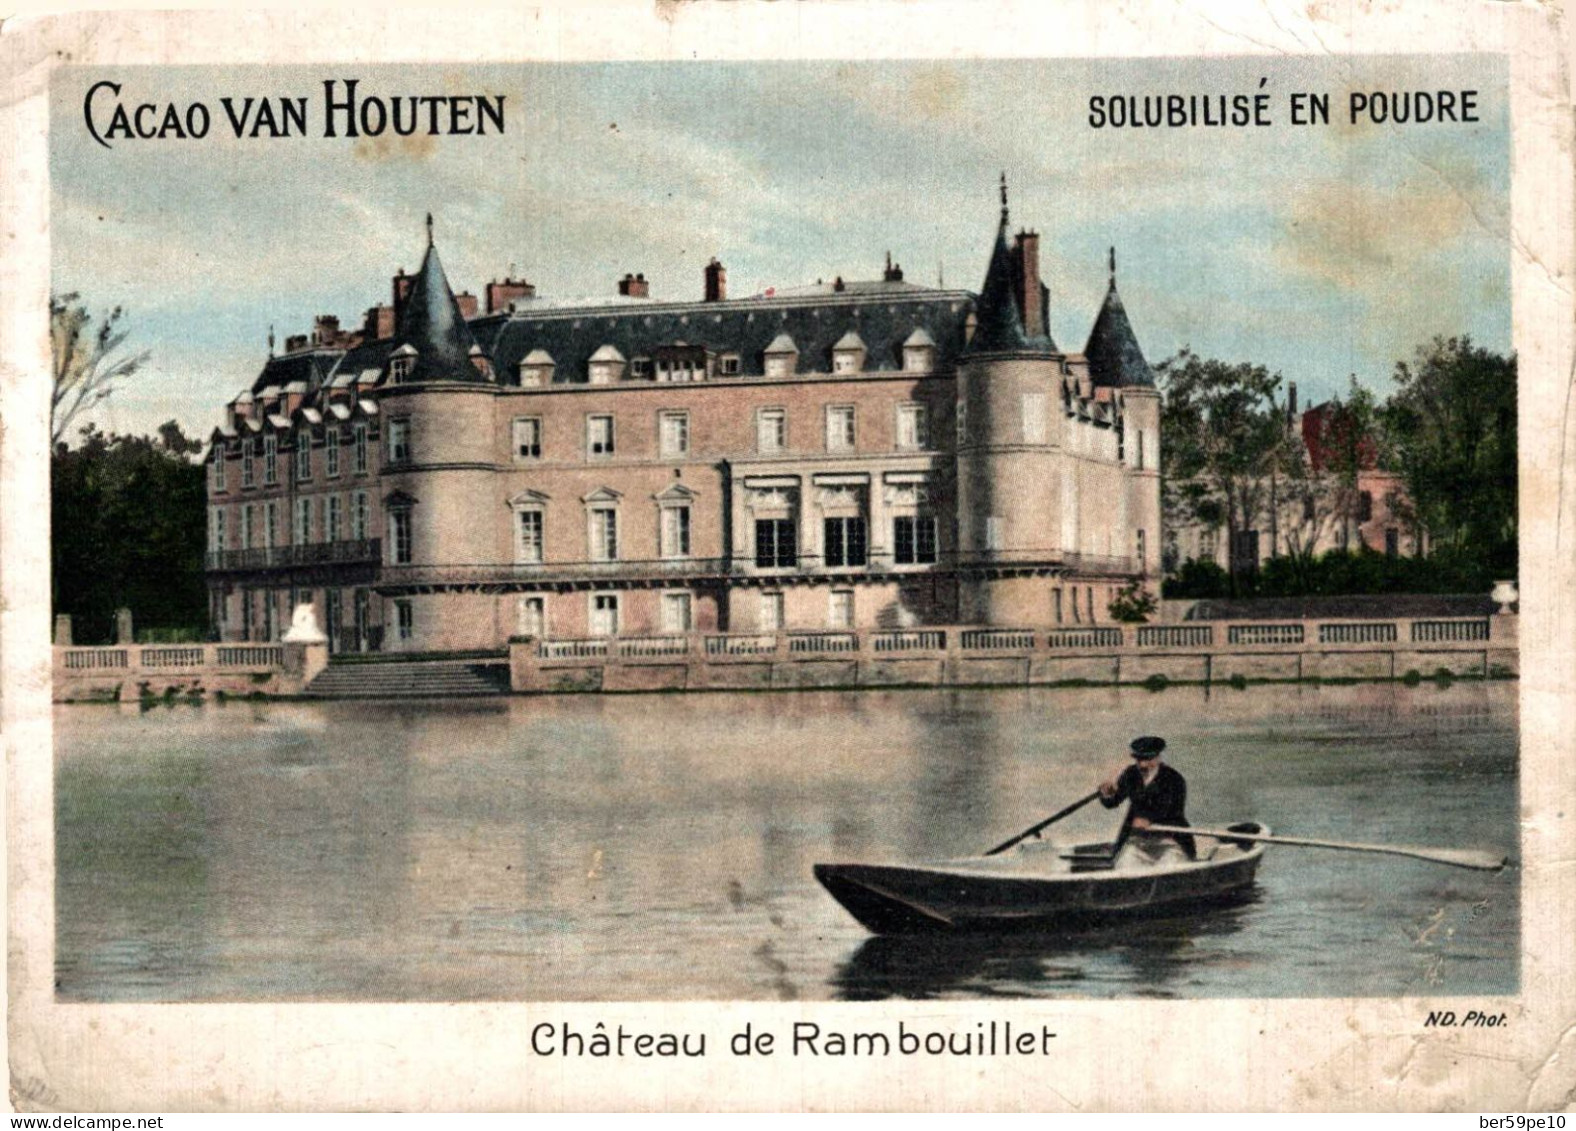 CHROMO CACAO VAN HOUTEN CHATEAU DE RAMBOUILLET - Van Houten